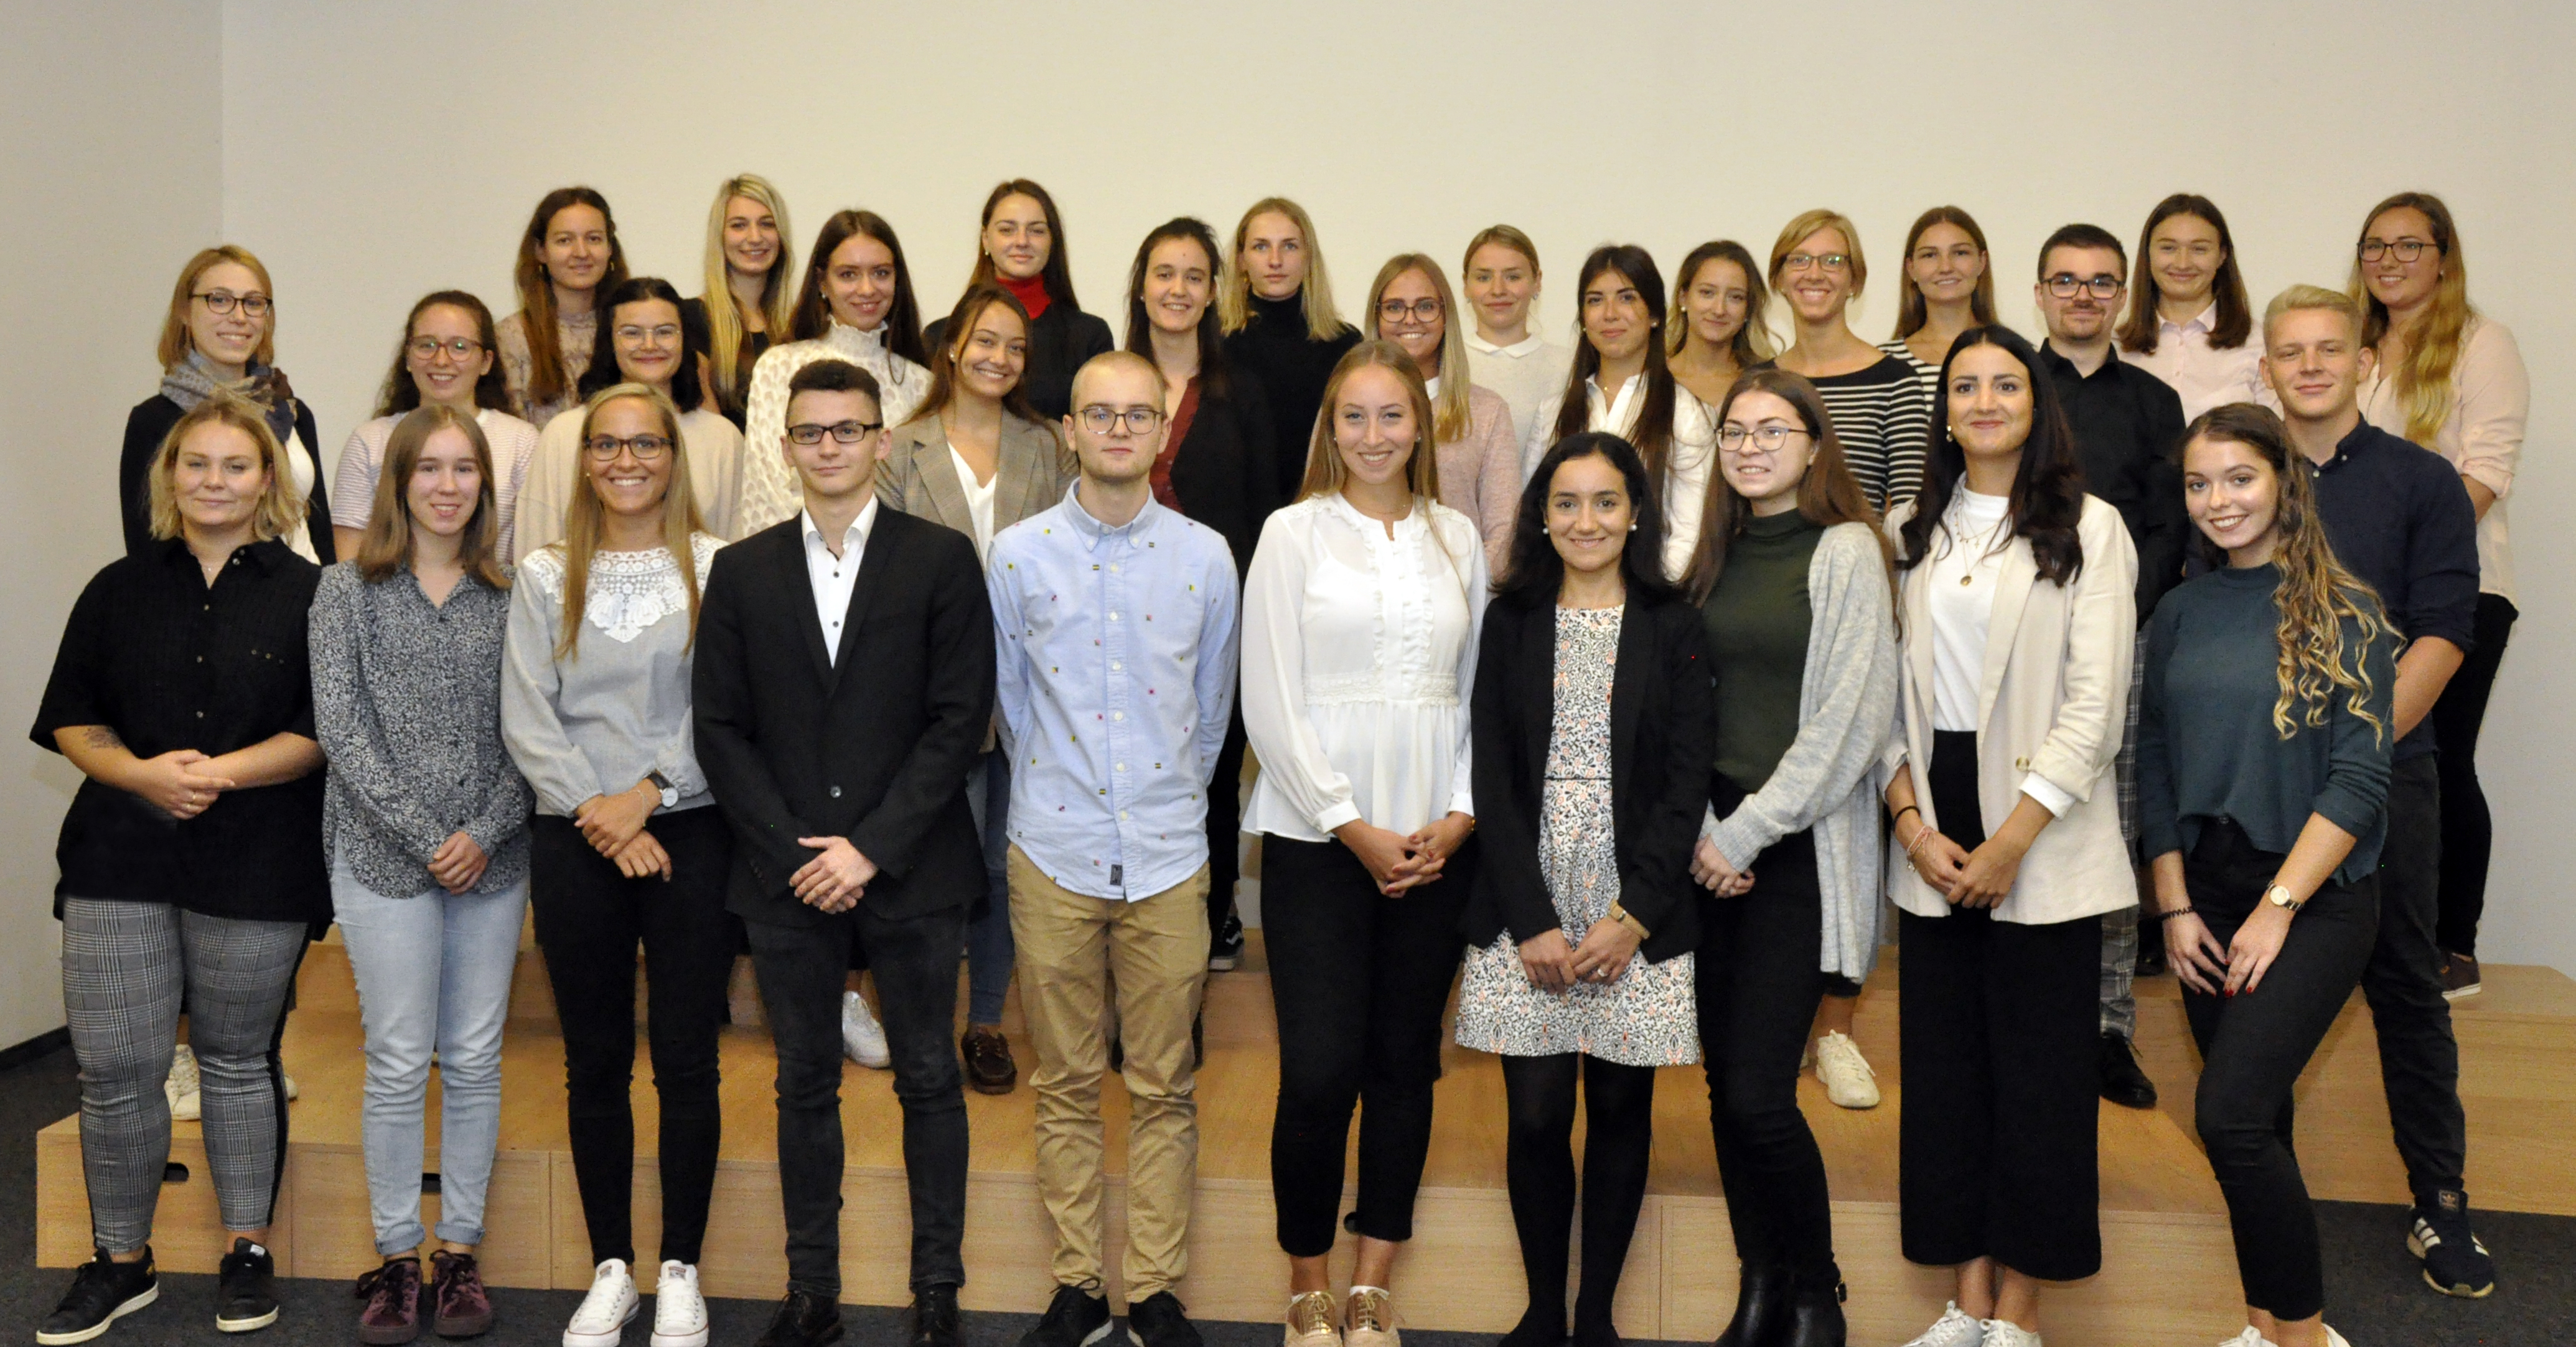 Gruppenfoto der 30 neuen Verwaltungsinspektorenanwärter der DRV Baden-Württemberg 2019, die in Stuttgart eingestellt wurden.